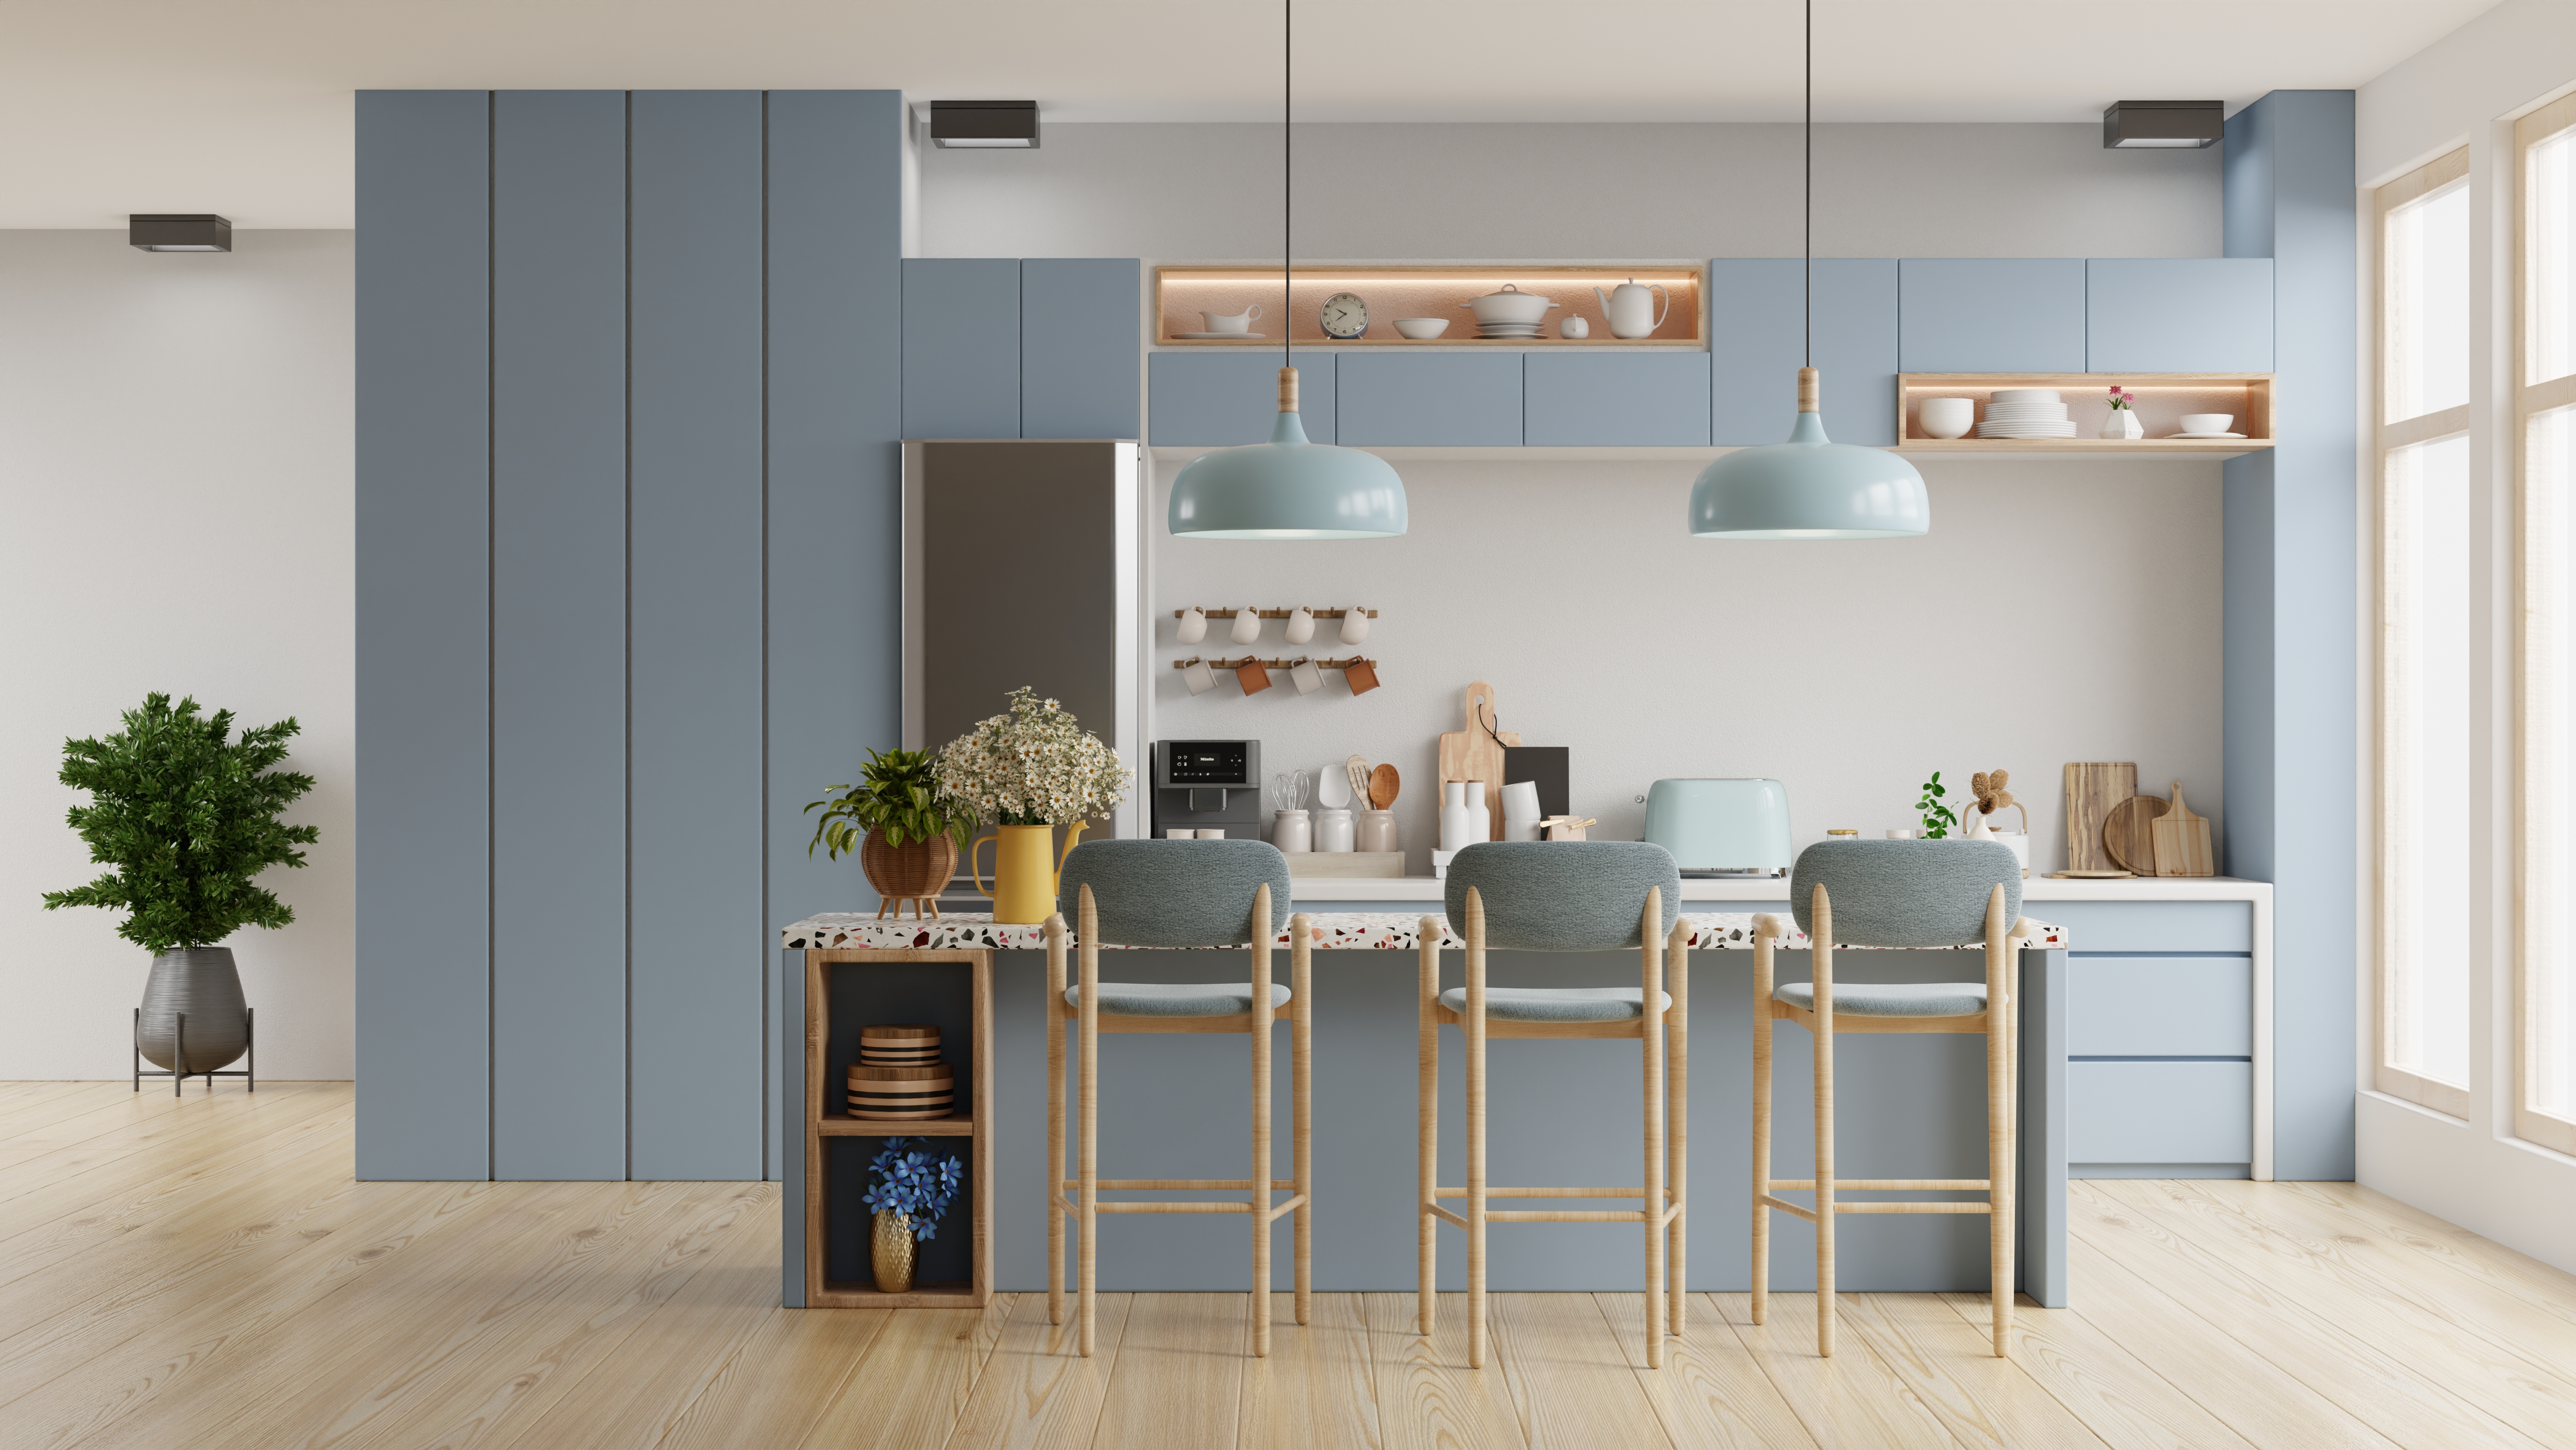 Modern blue kitchen interior with furniture,kitchen interior